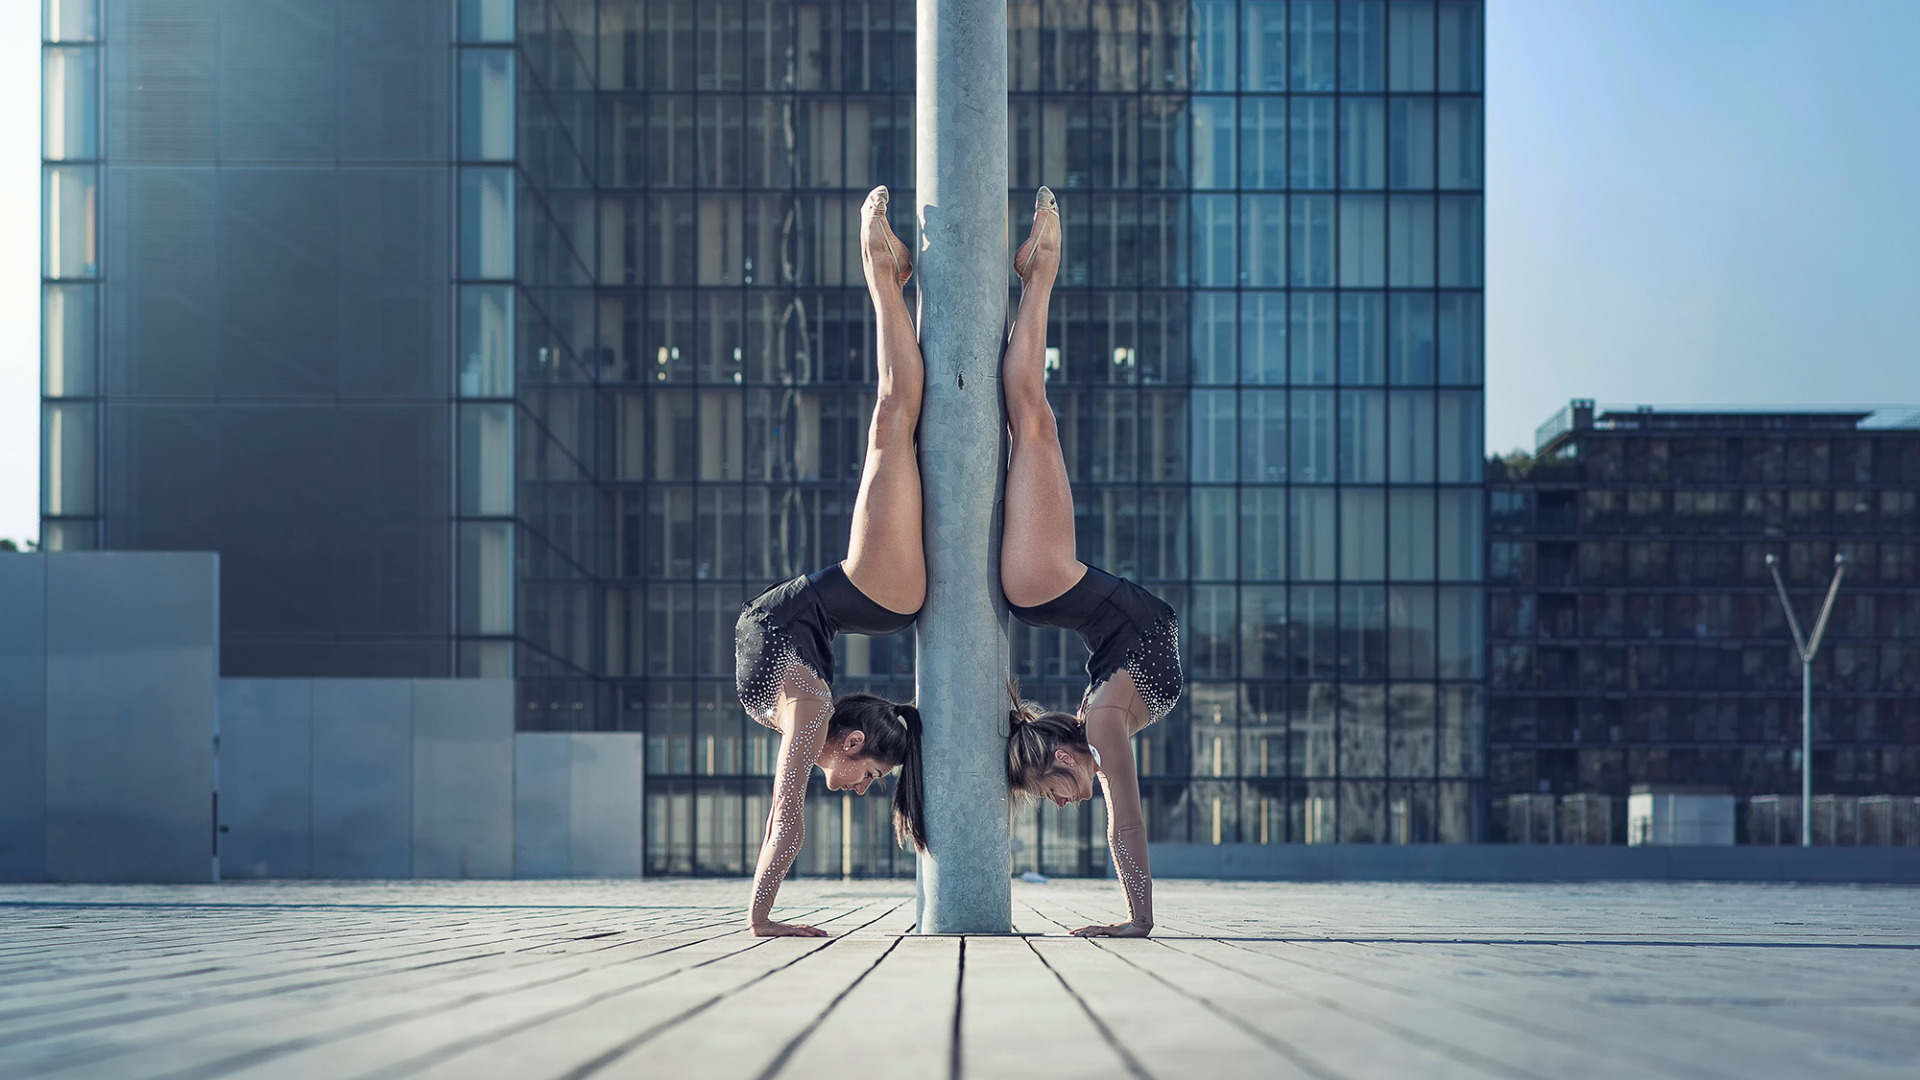 Сиськи эротичной невероятно гибкой  гимнастки 15 фото эротики